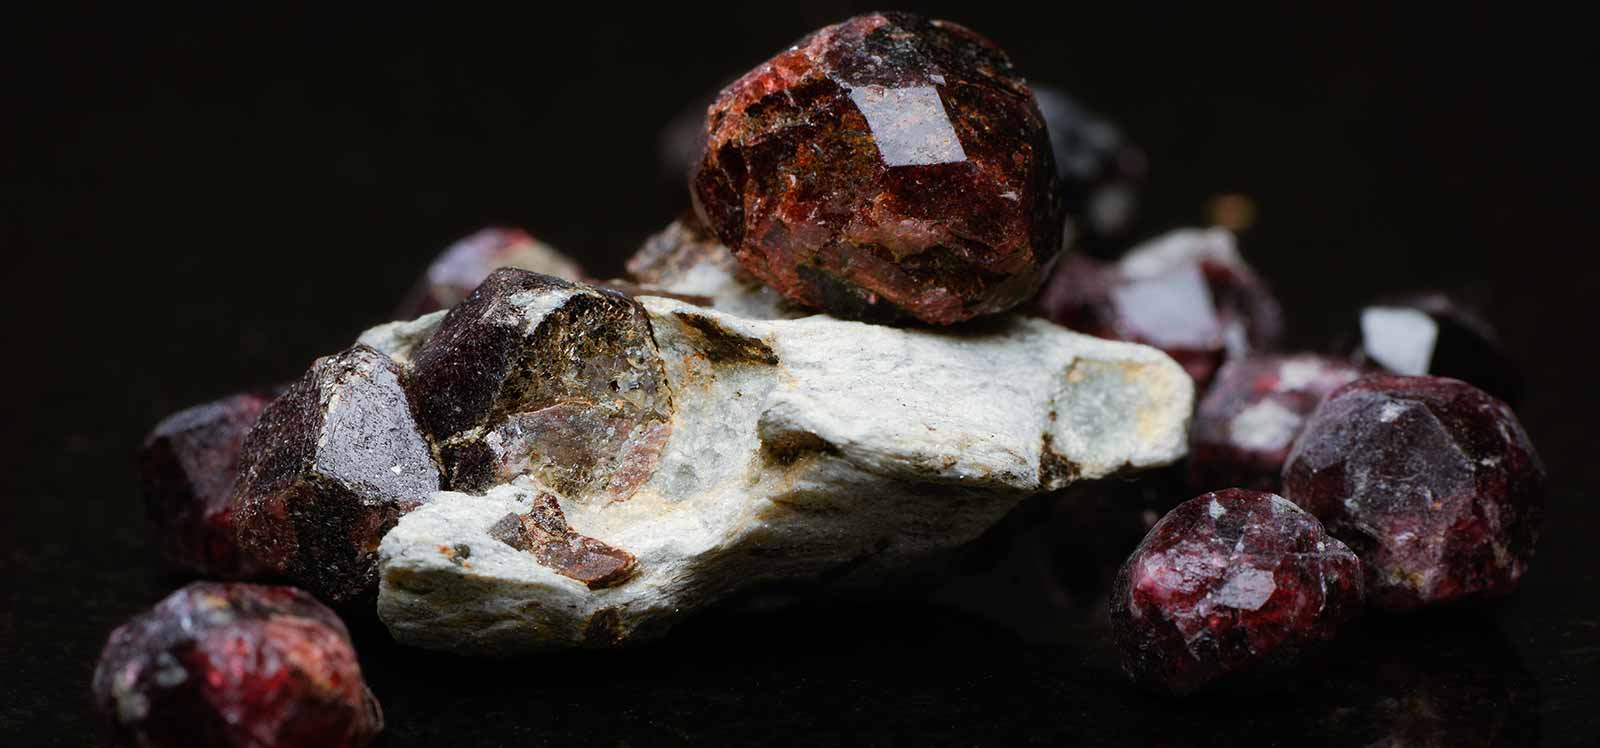 Healing Properties of Garnet – Moon Pebbles